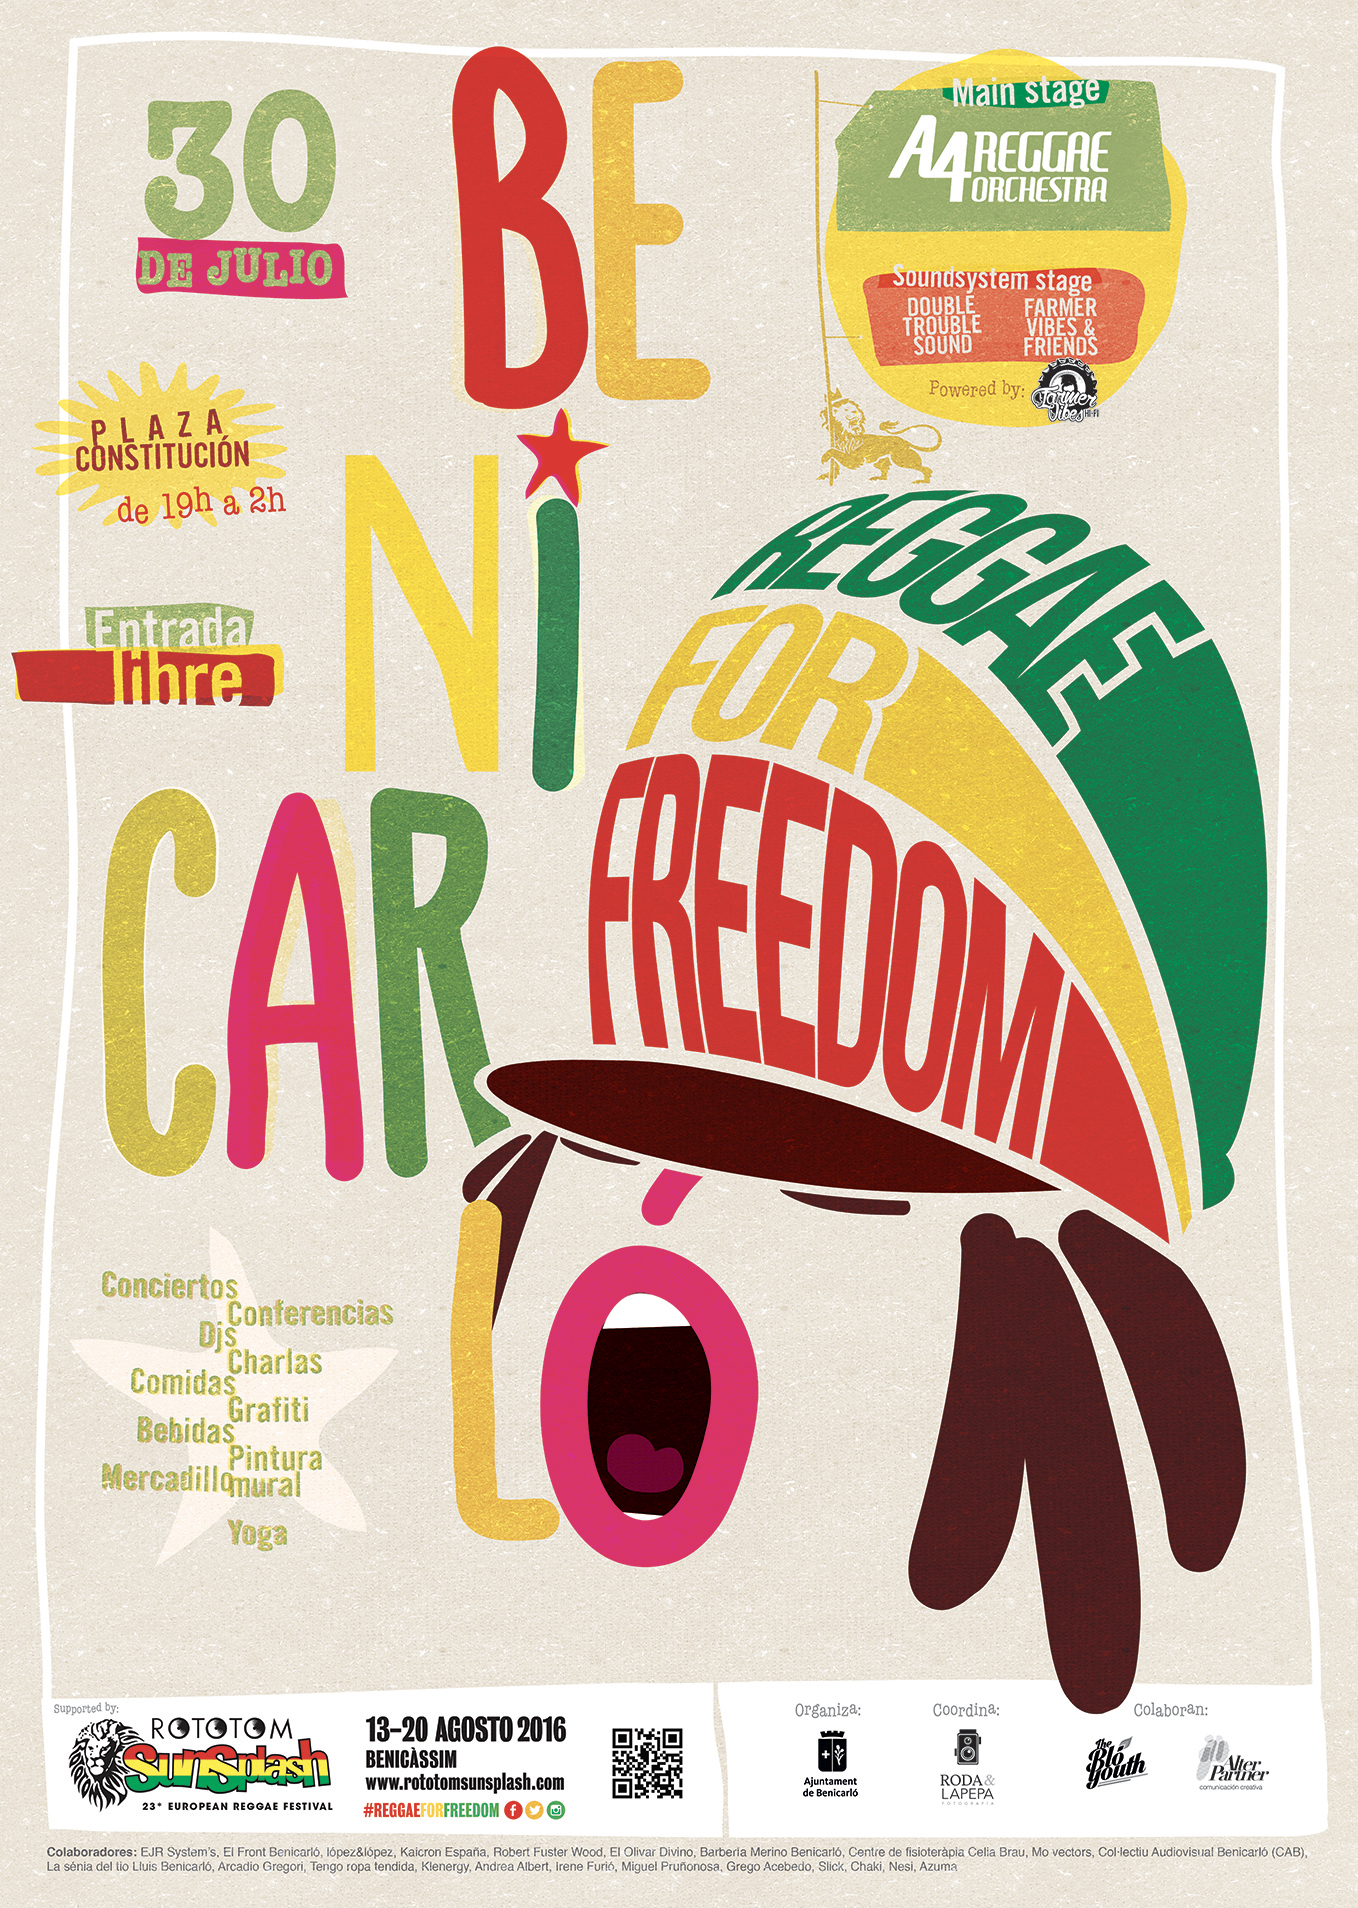 Benicarló reggae for freedom